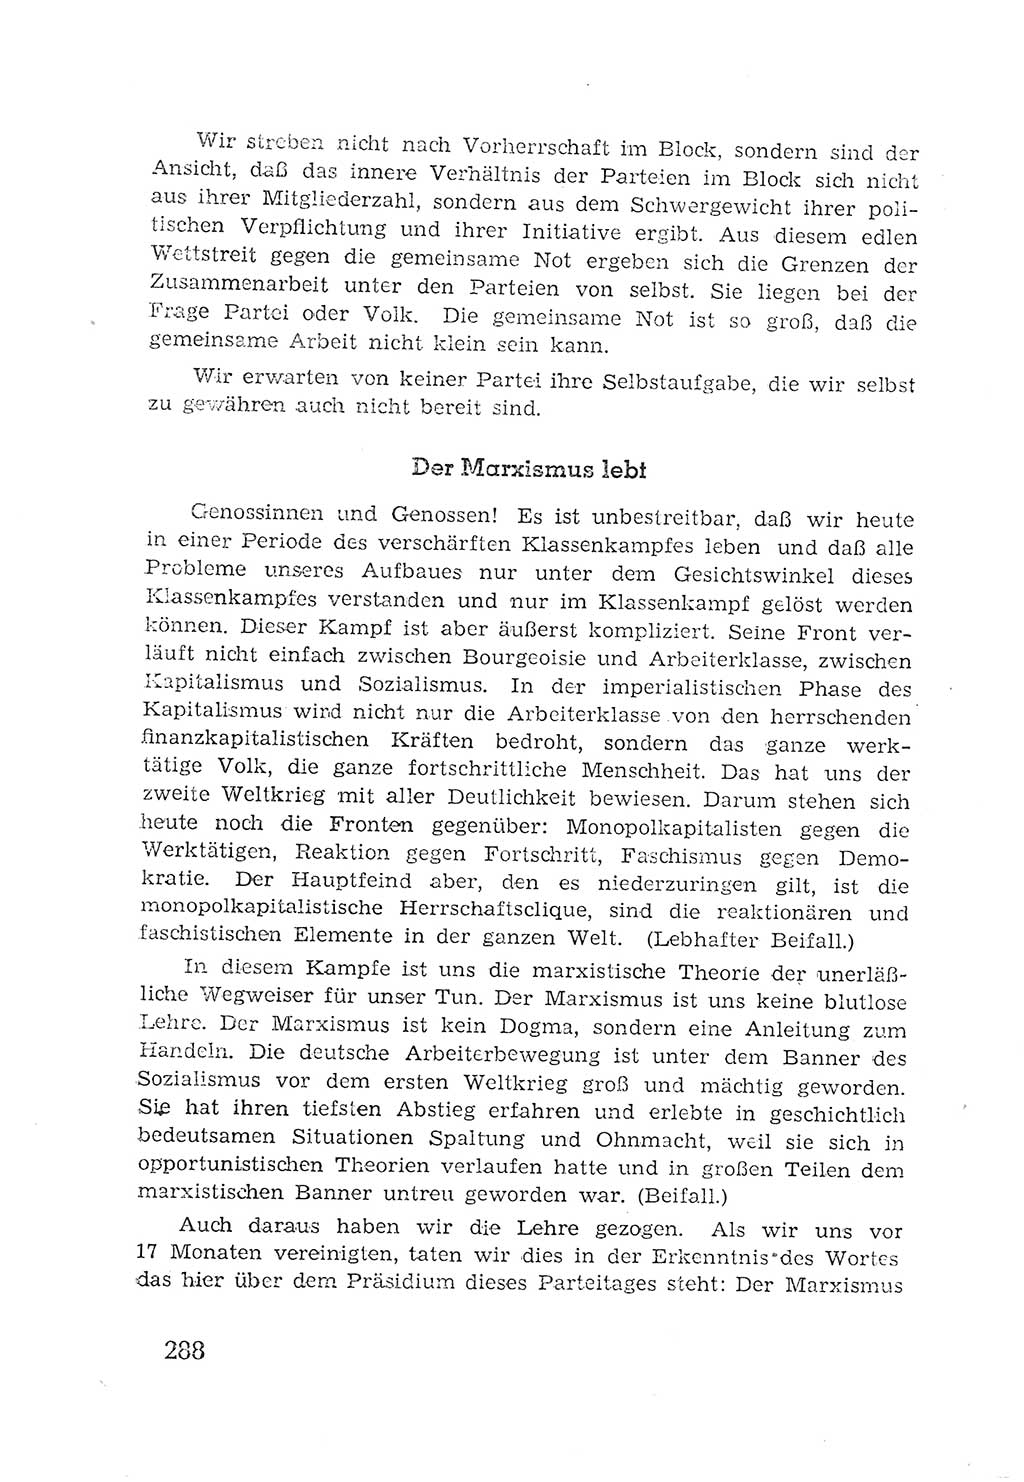 Protokoll der Verhandlungen des 2. Parteitages der Sozialistischen Einheitspartei Deutschlands (SED) [Sowjetische Besatzungszone (SBZ) Deutschlands] 1947, Seite 288 (Prot. Verh. 2. PT SED SBZ Dtl. 1947, S. 288)